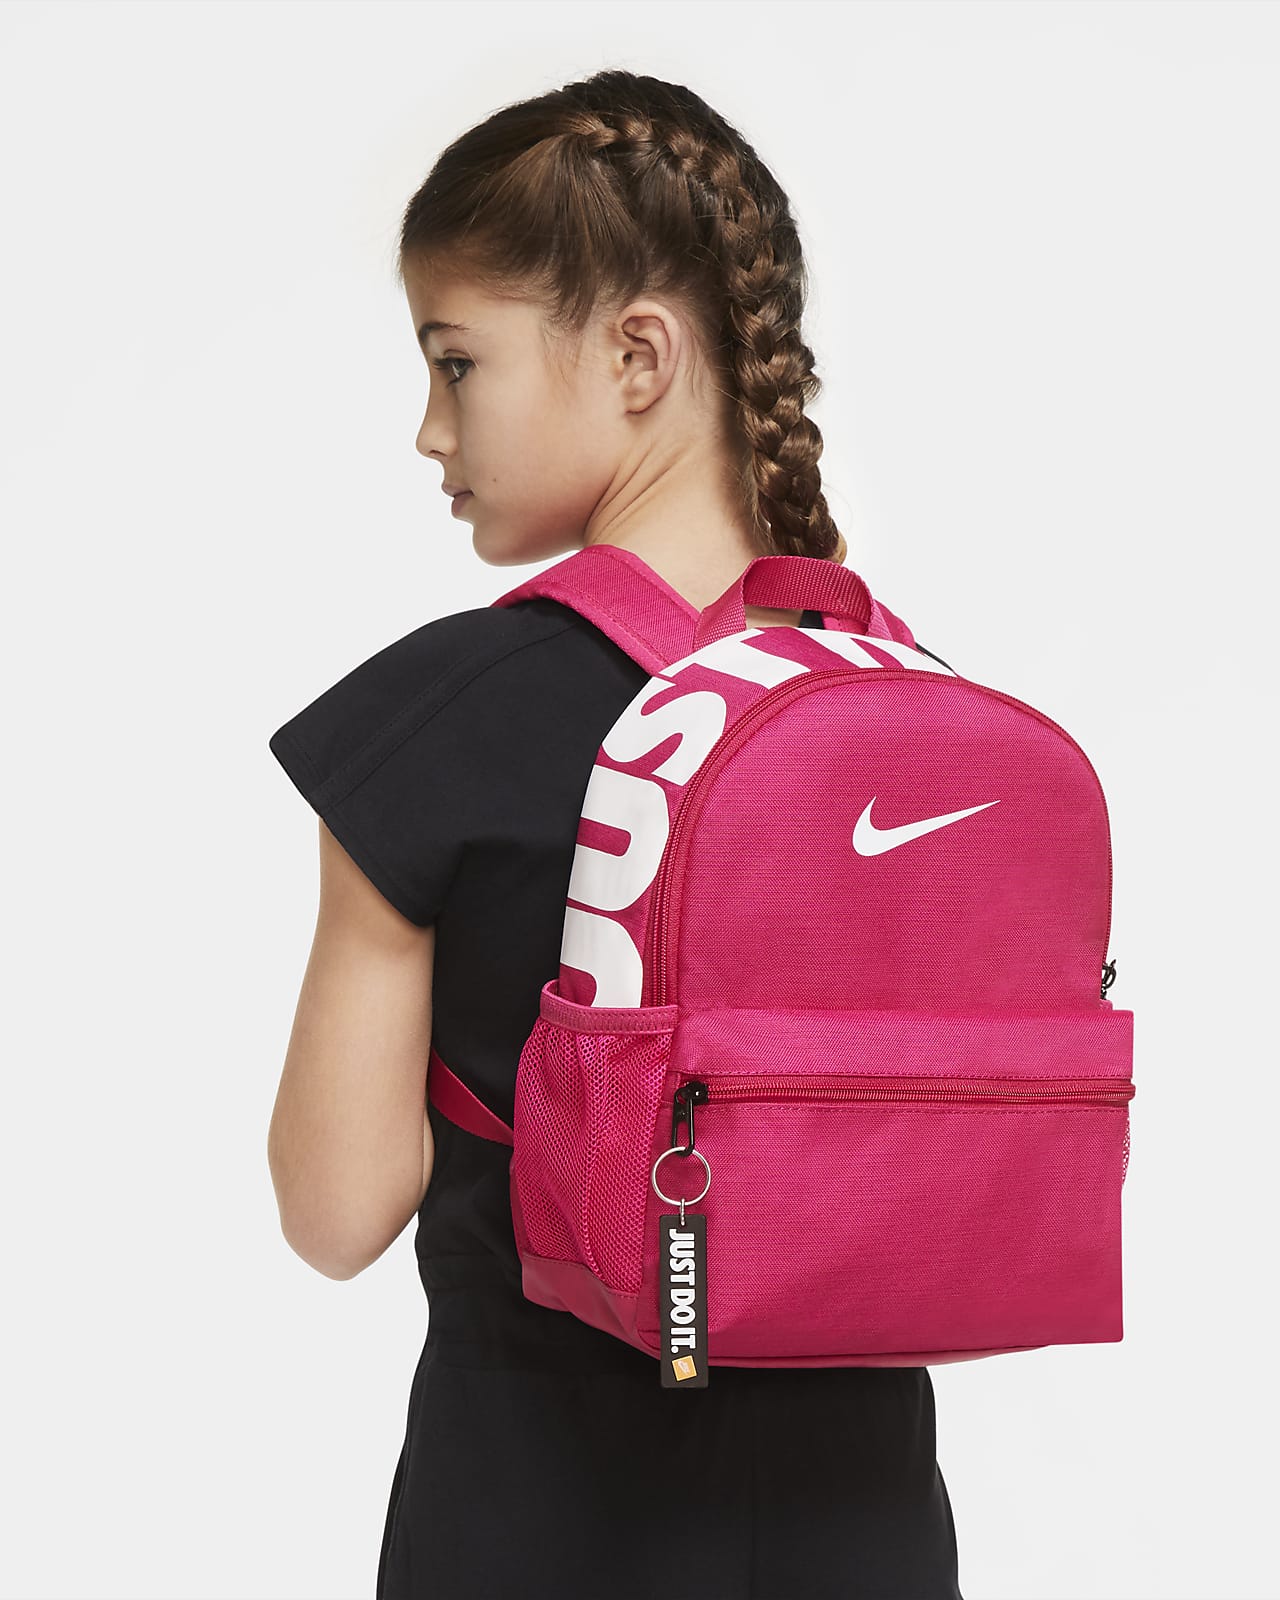 Boys Nike Backpack www.frozit.in